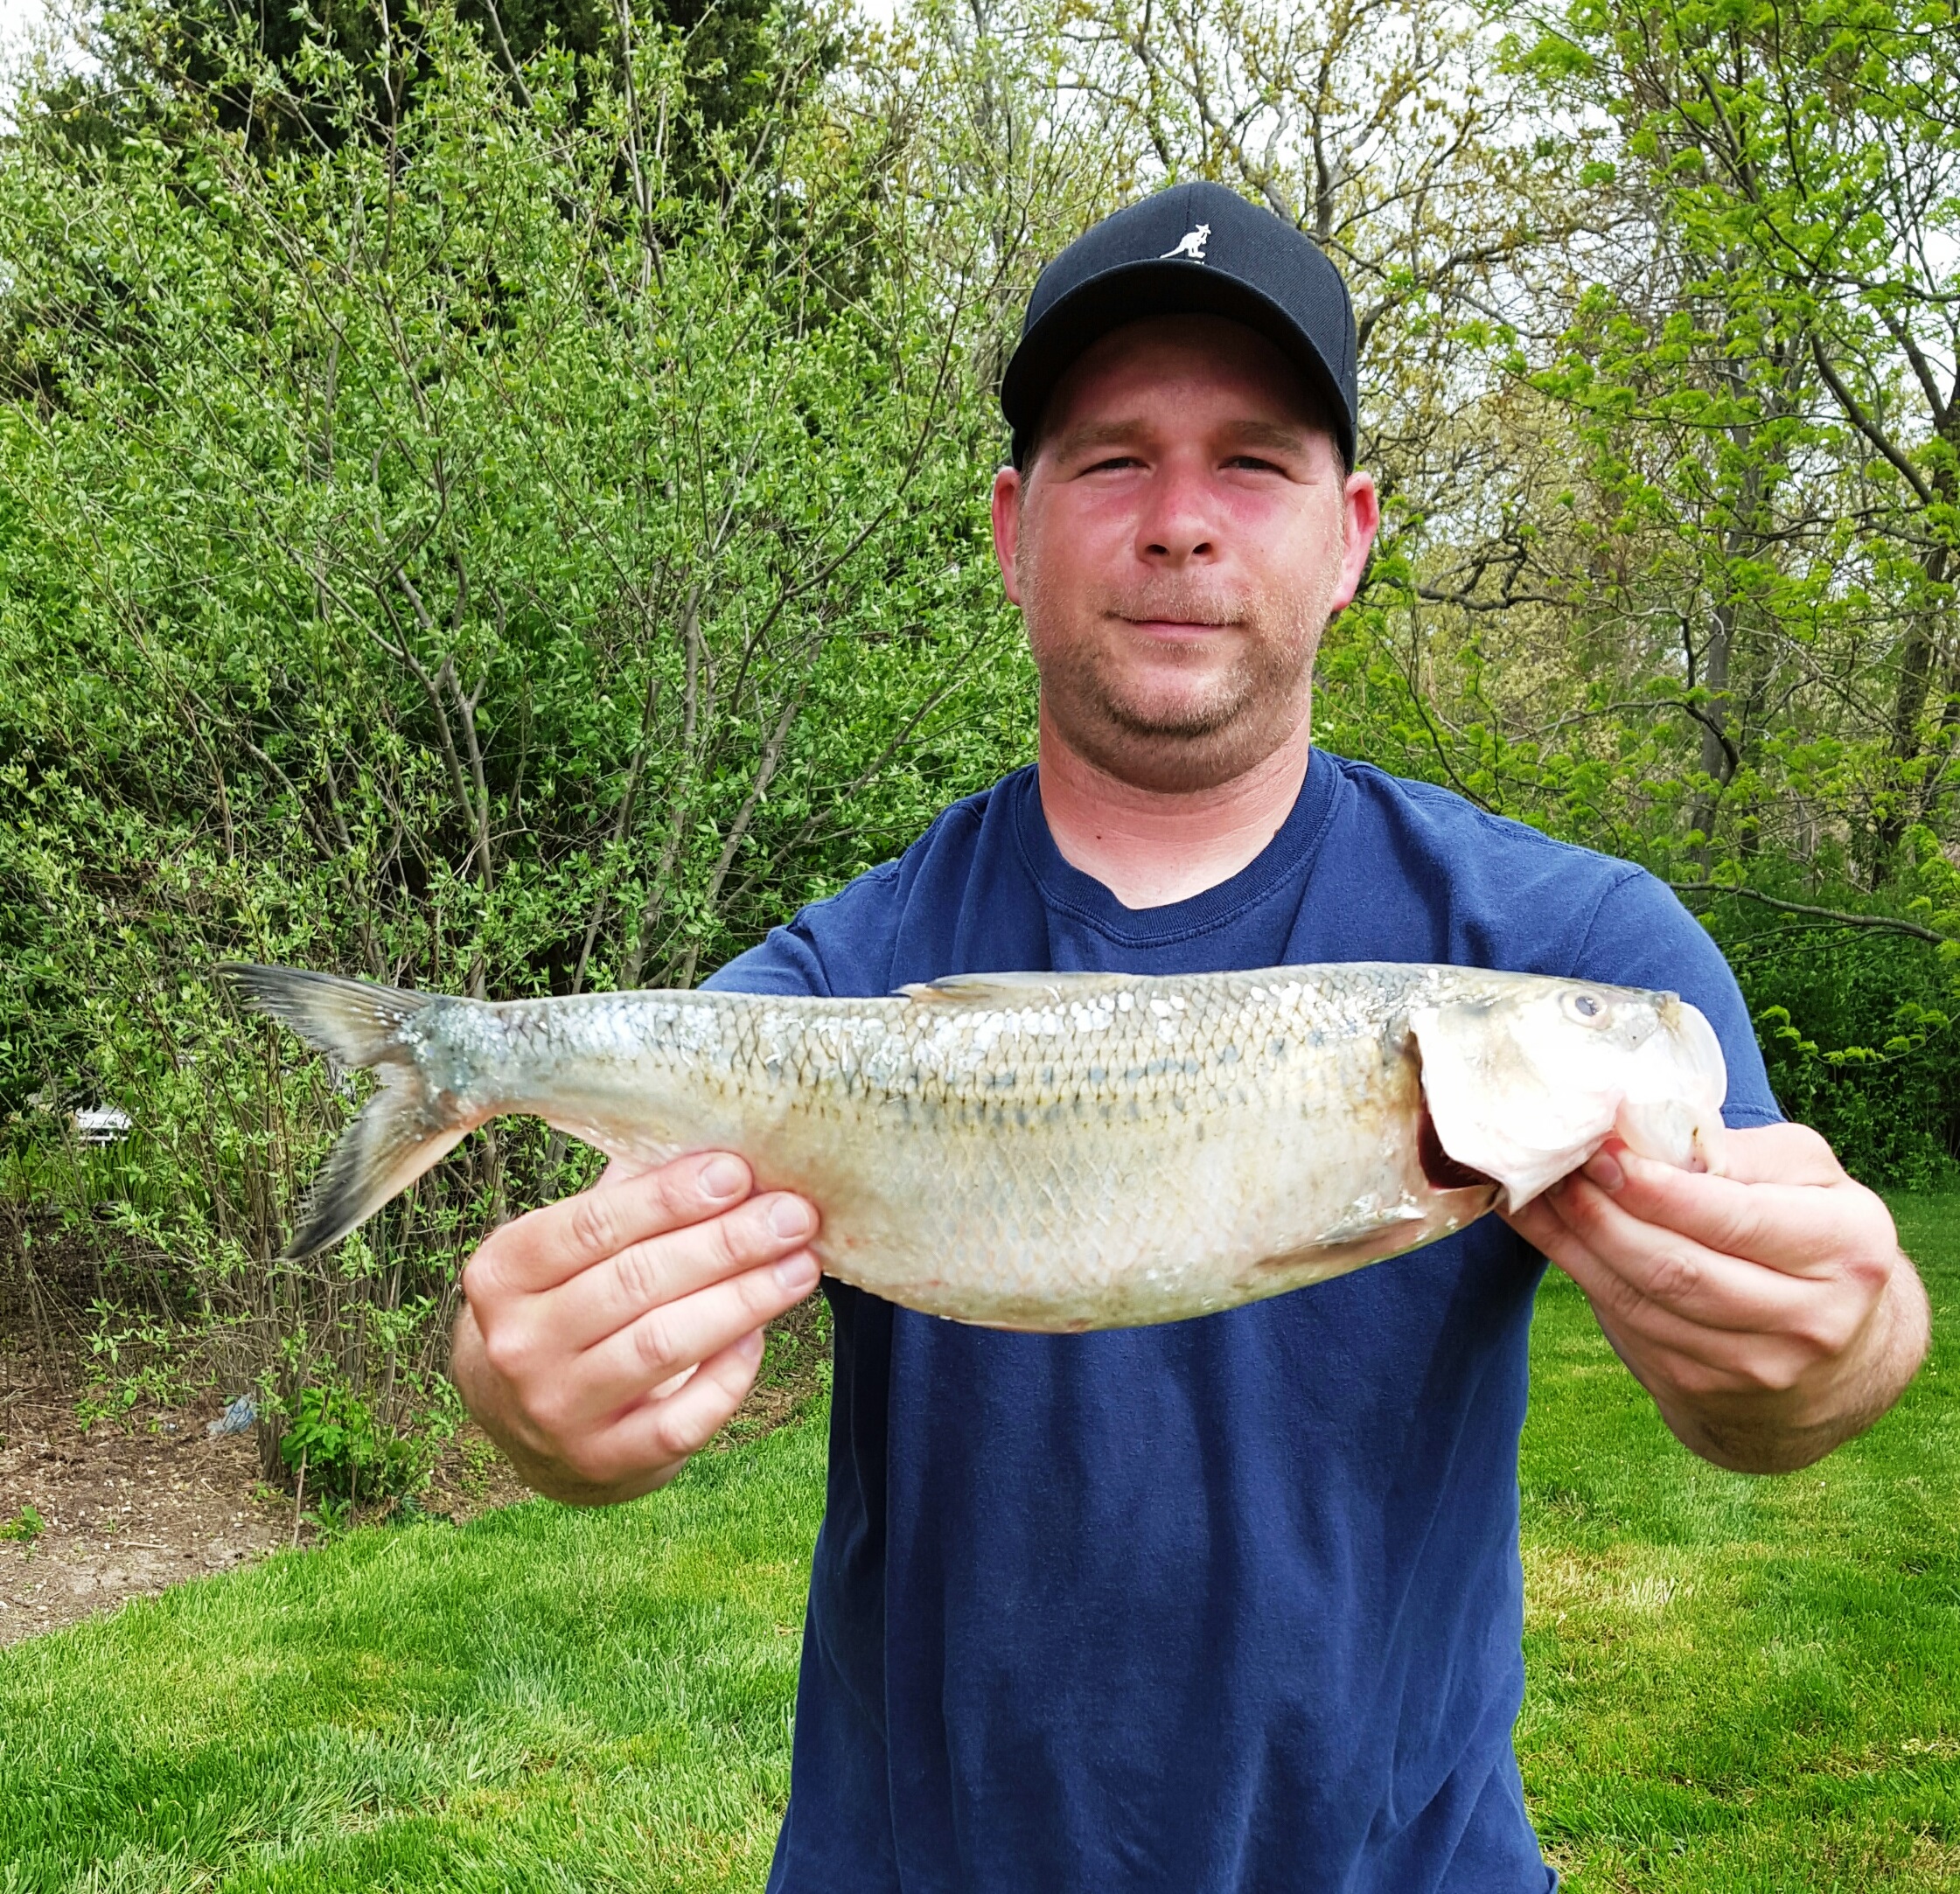 Steve Wengler holds his record skipjack herring near the Mississippi River.